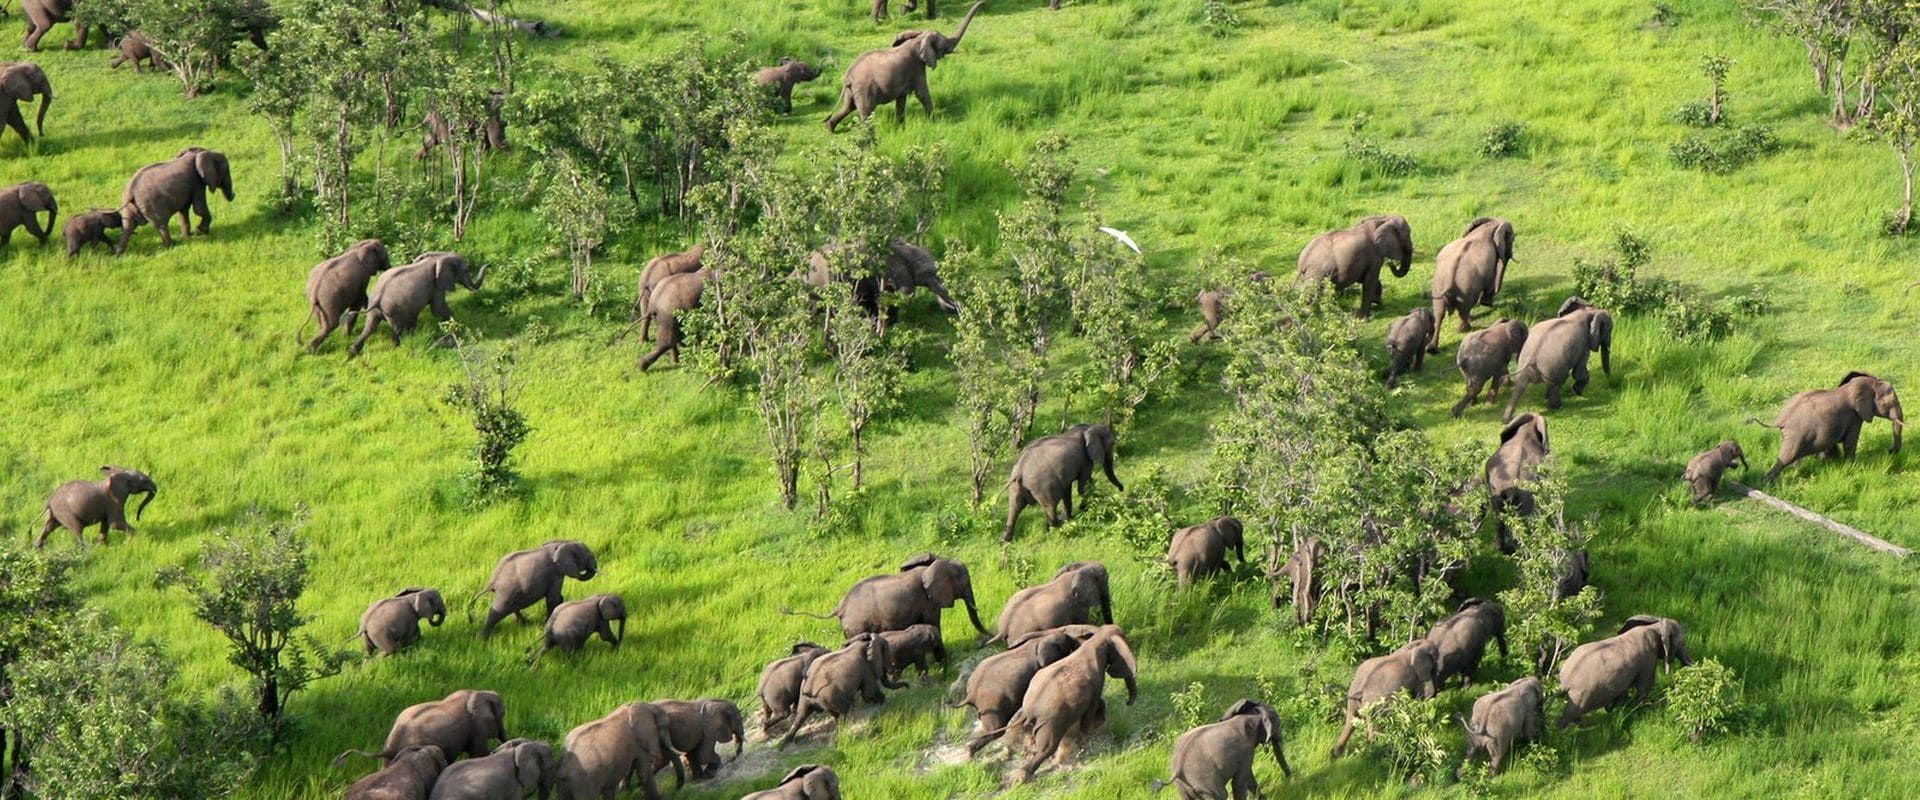 Elephants - Zambia - African Luxury